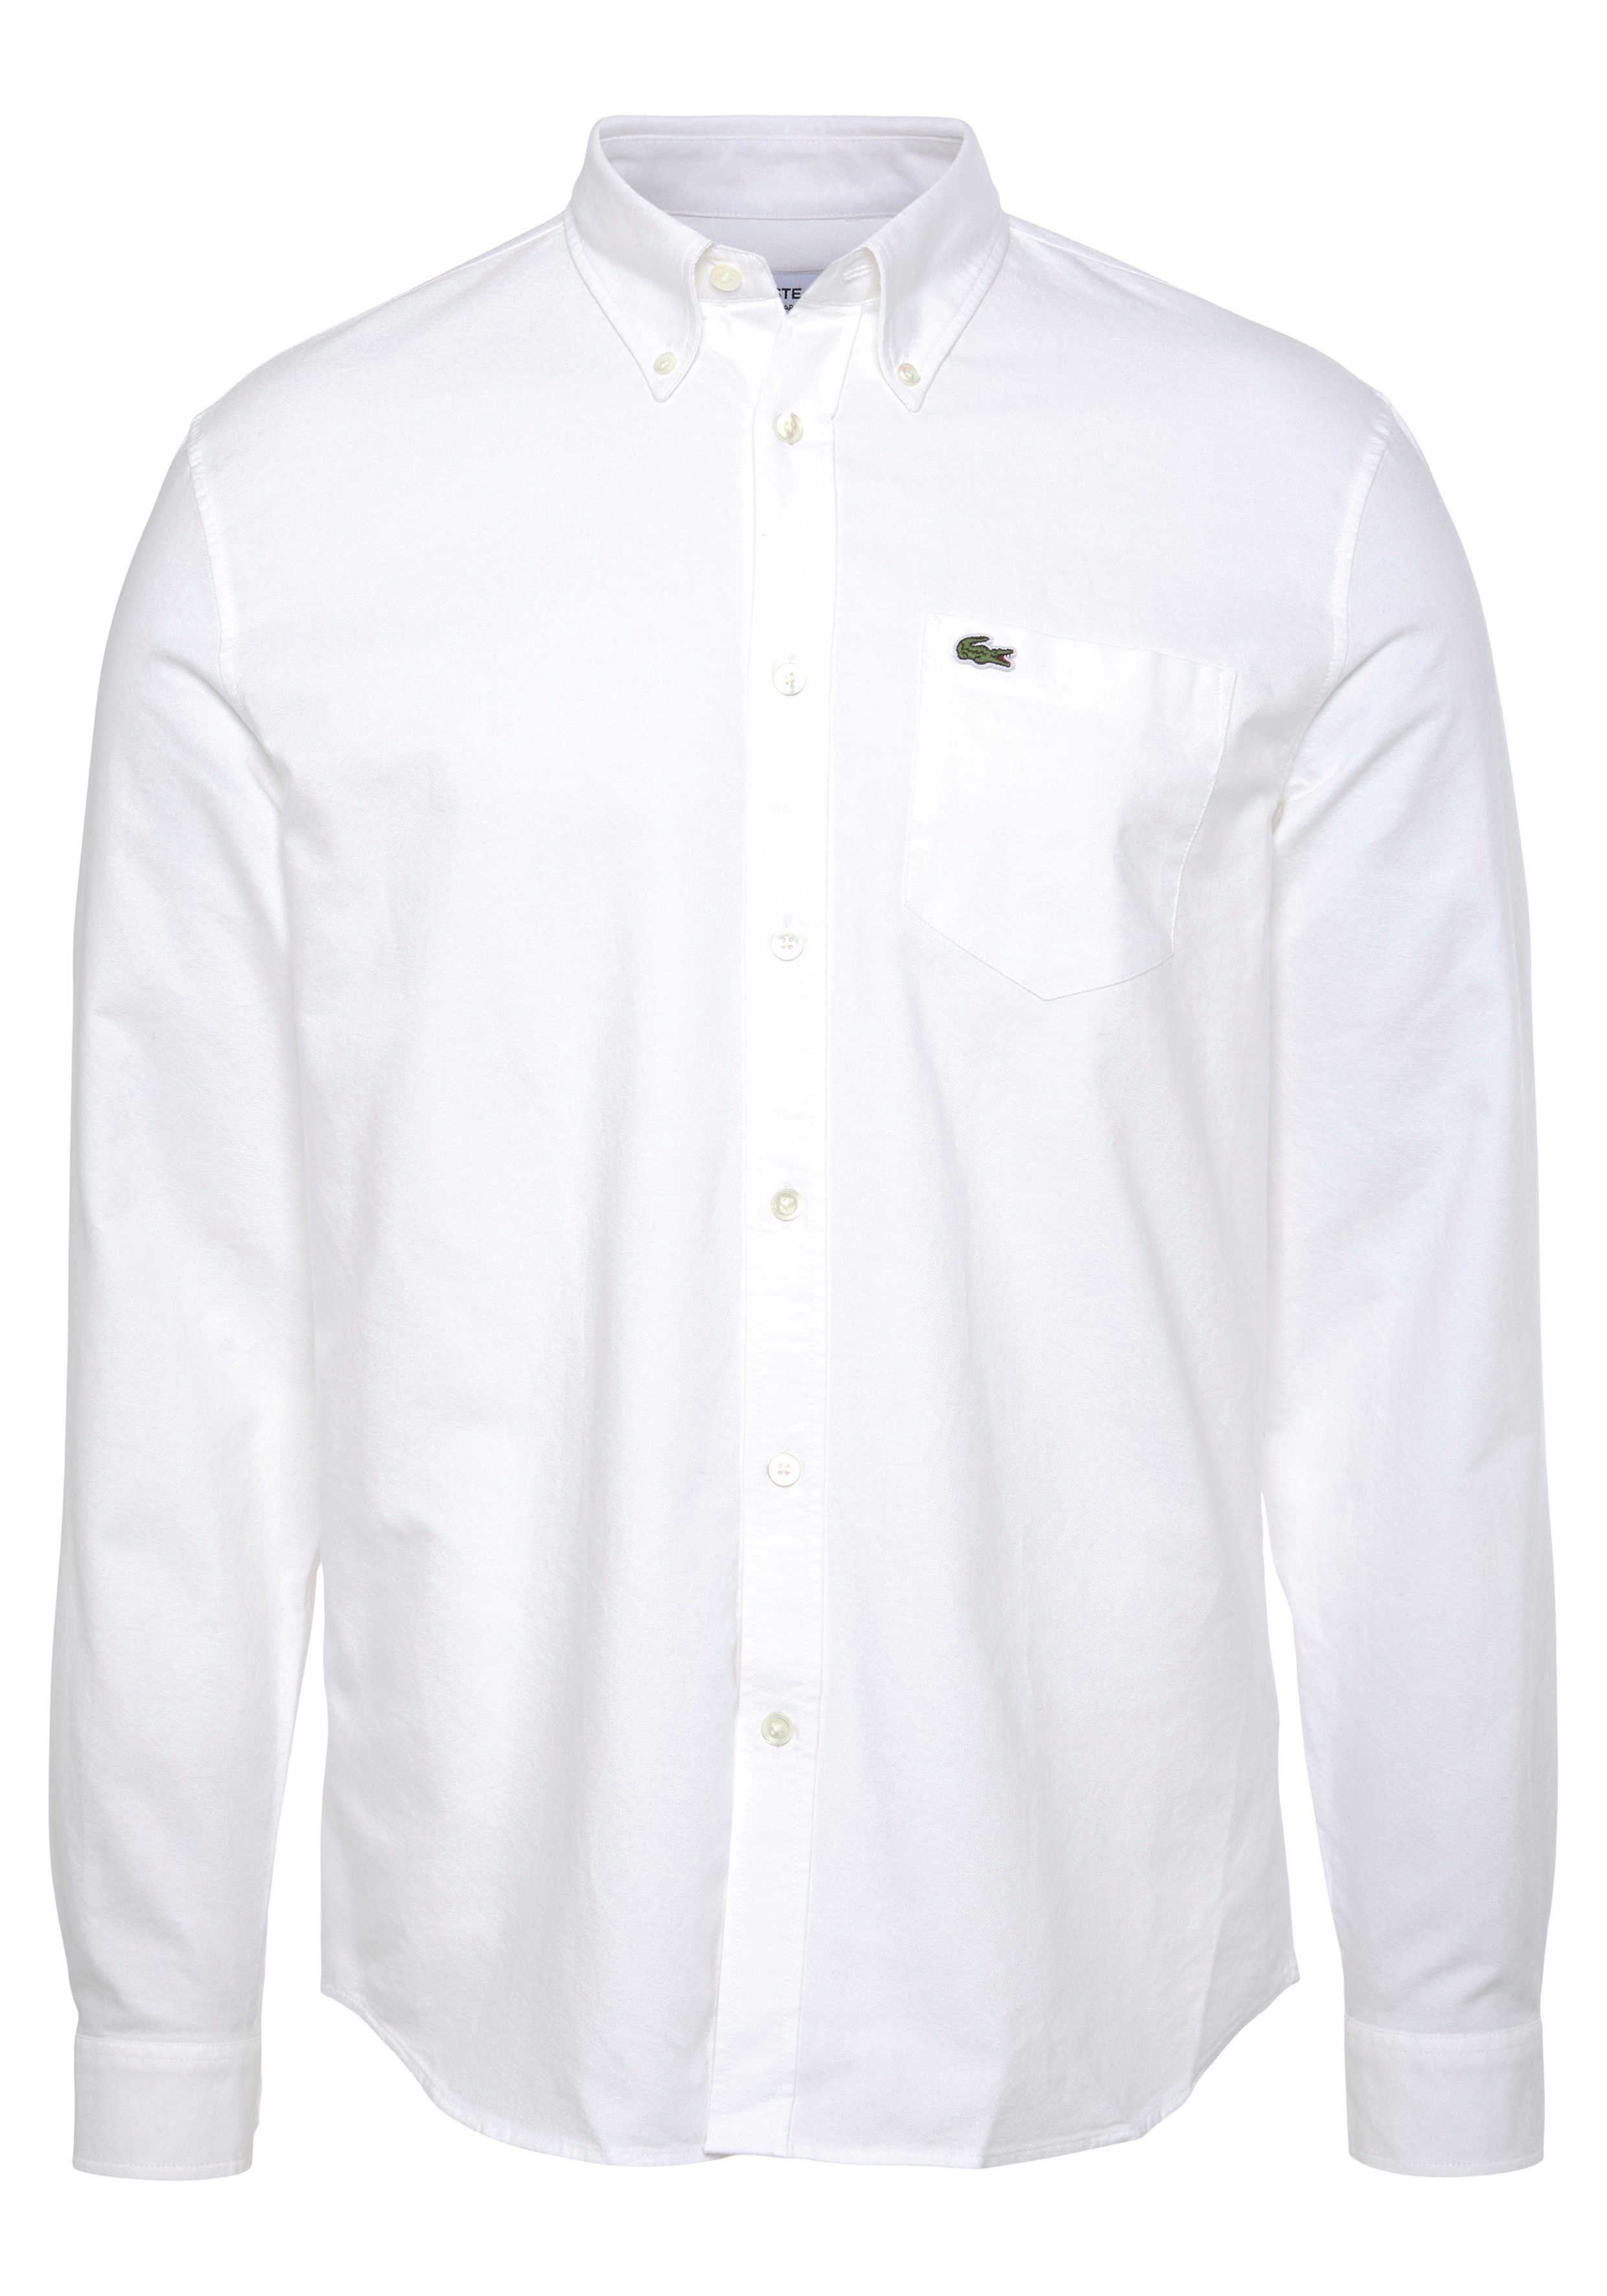 Krokodil Logo WHITE auf Langarmhemd Brusttasche OBERHEMDEN der Lacoste mit